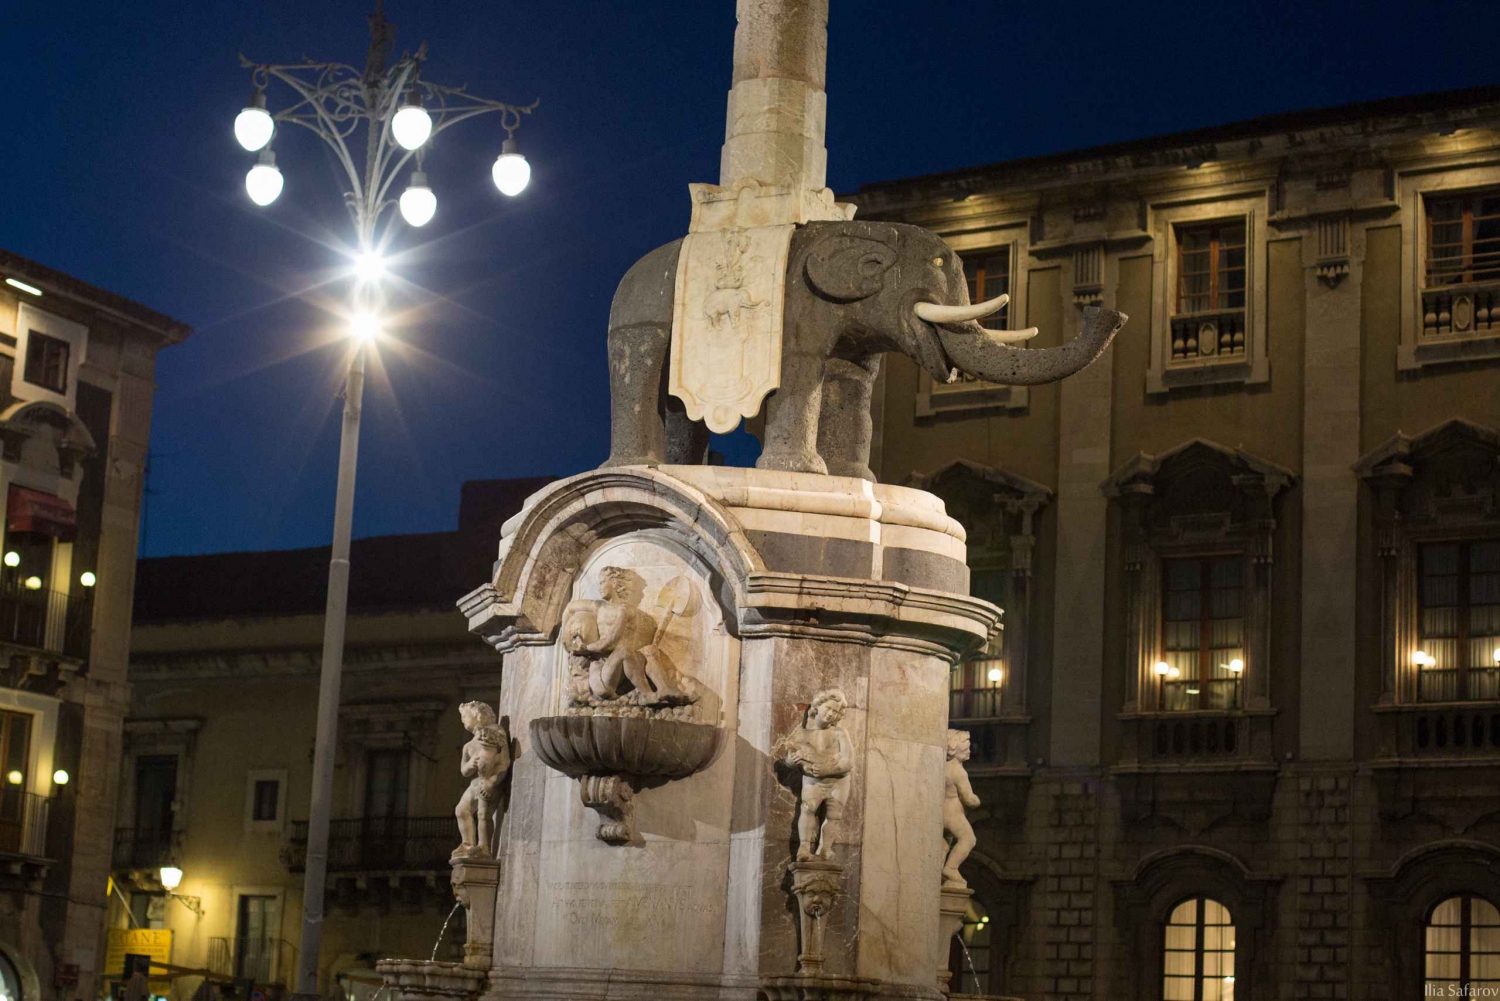 Catania: Evening City Secrets and Aperitif Tour